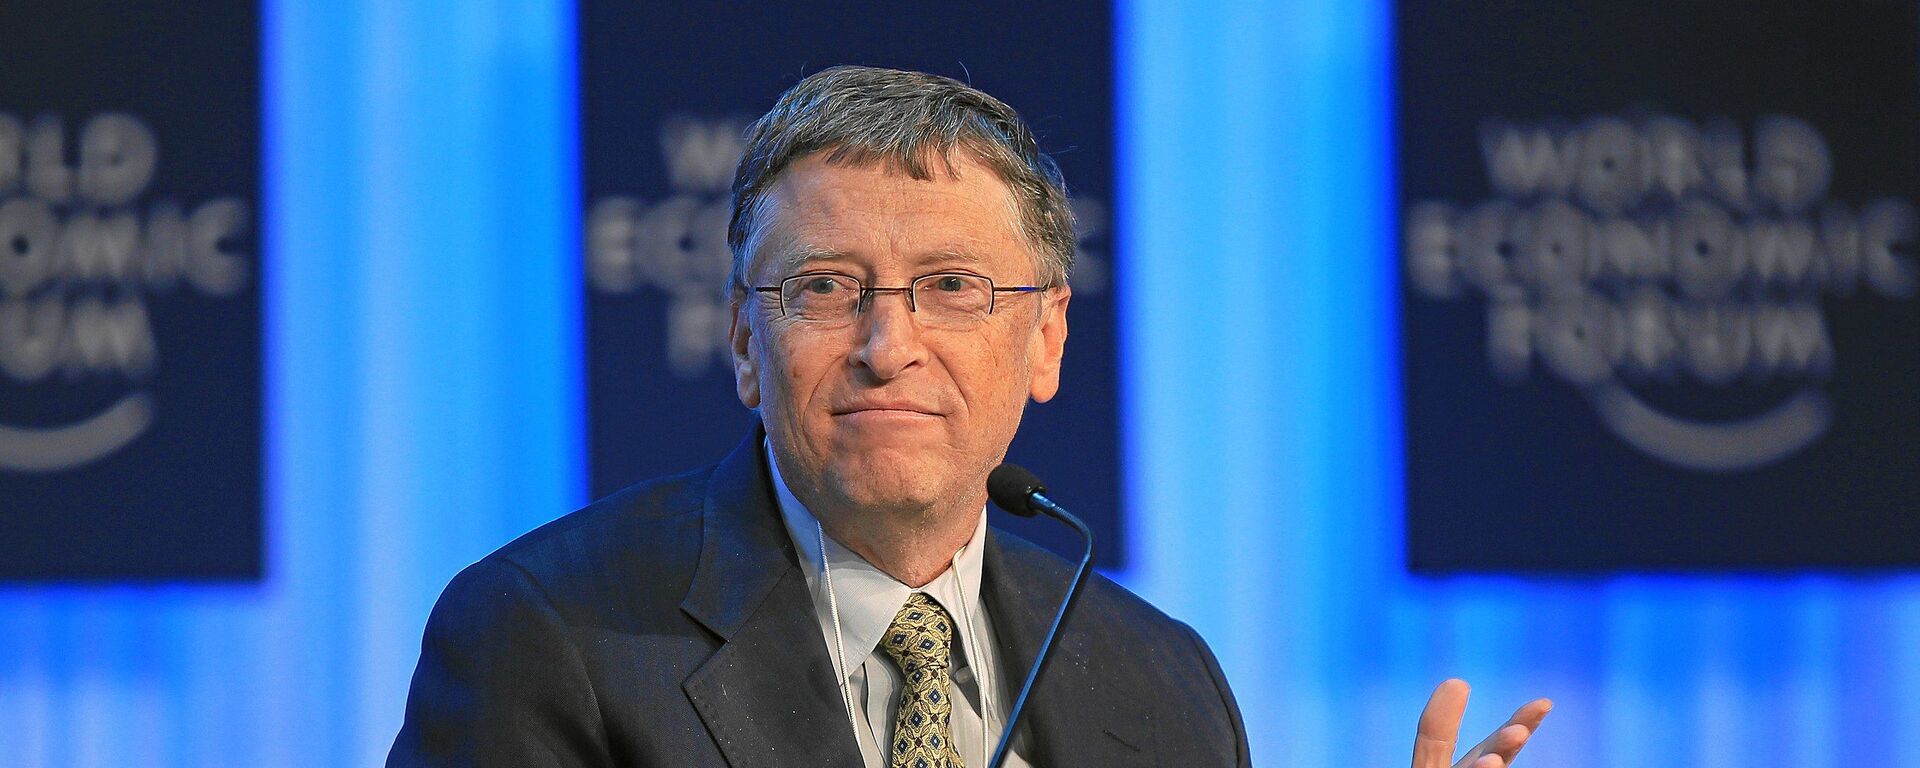 Milijarder i osnivač Majkrosofta Bil Gejts na Svetskom ekonomskom forumu 2013. godine - Sputnik Srbija, 1920, 30.10.2021